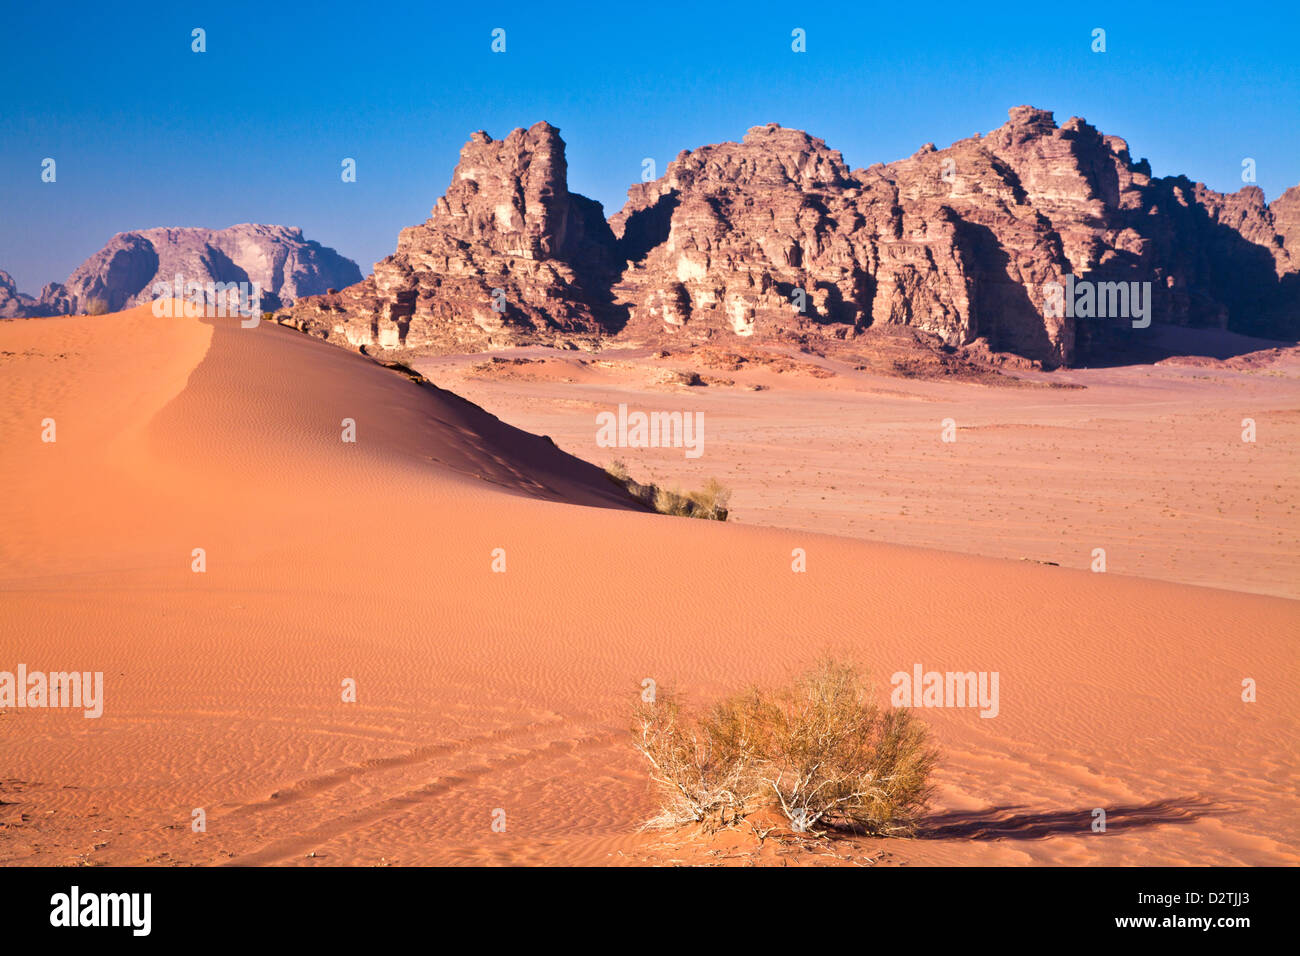 El desierto de Jordania de Wadi Rum o el Valle de la luna Foto de stock